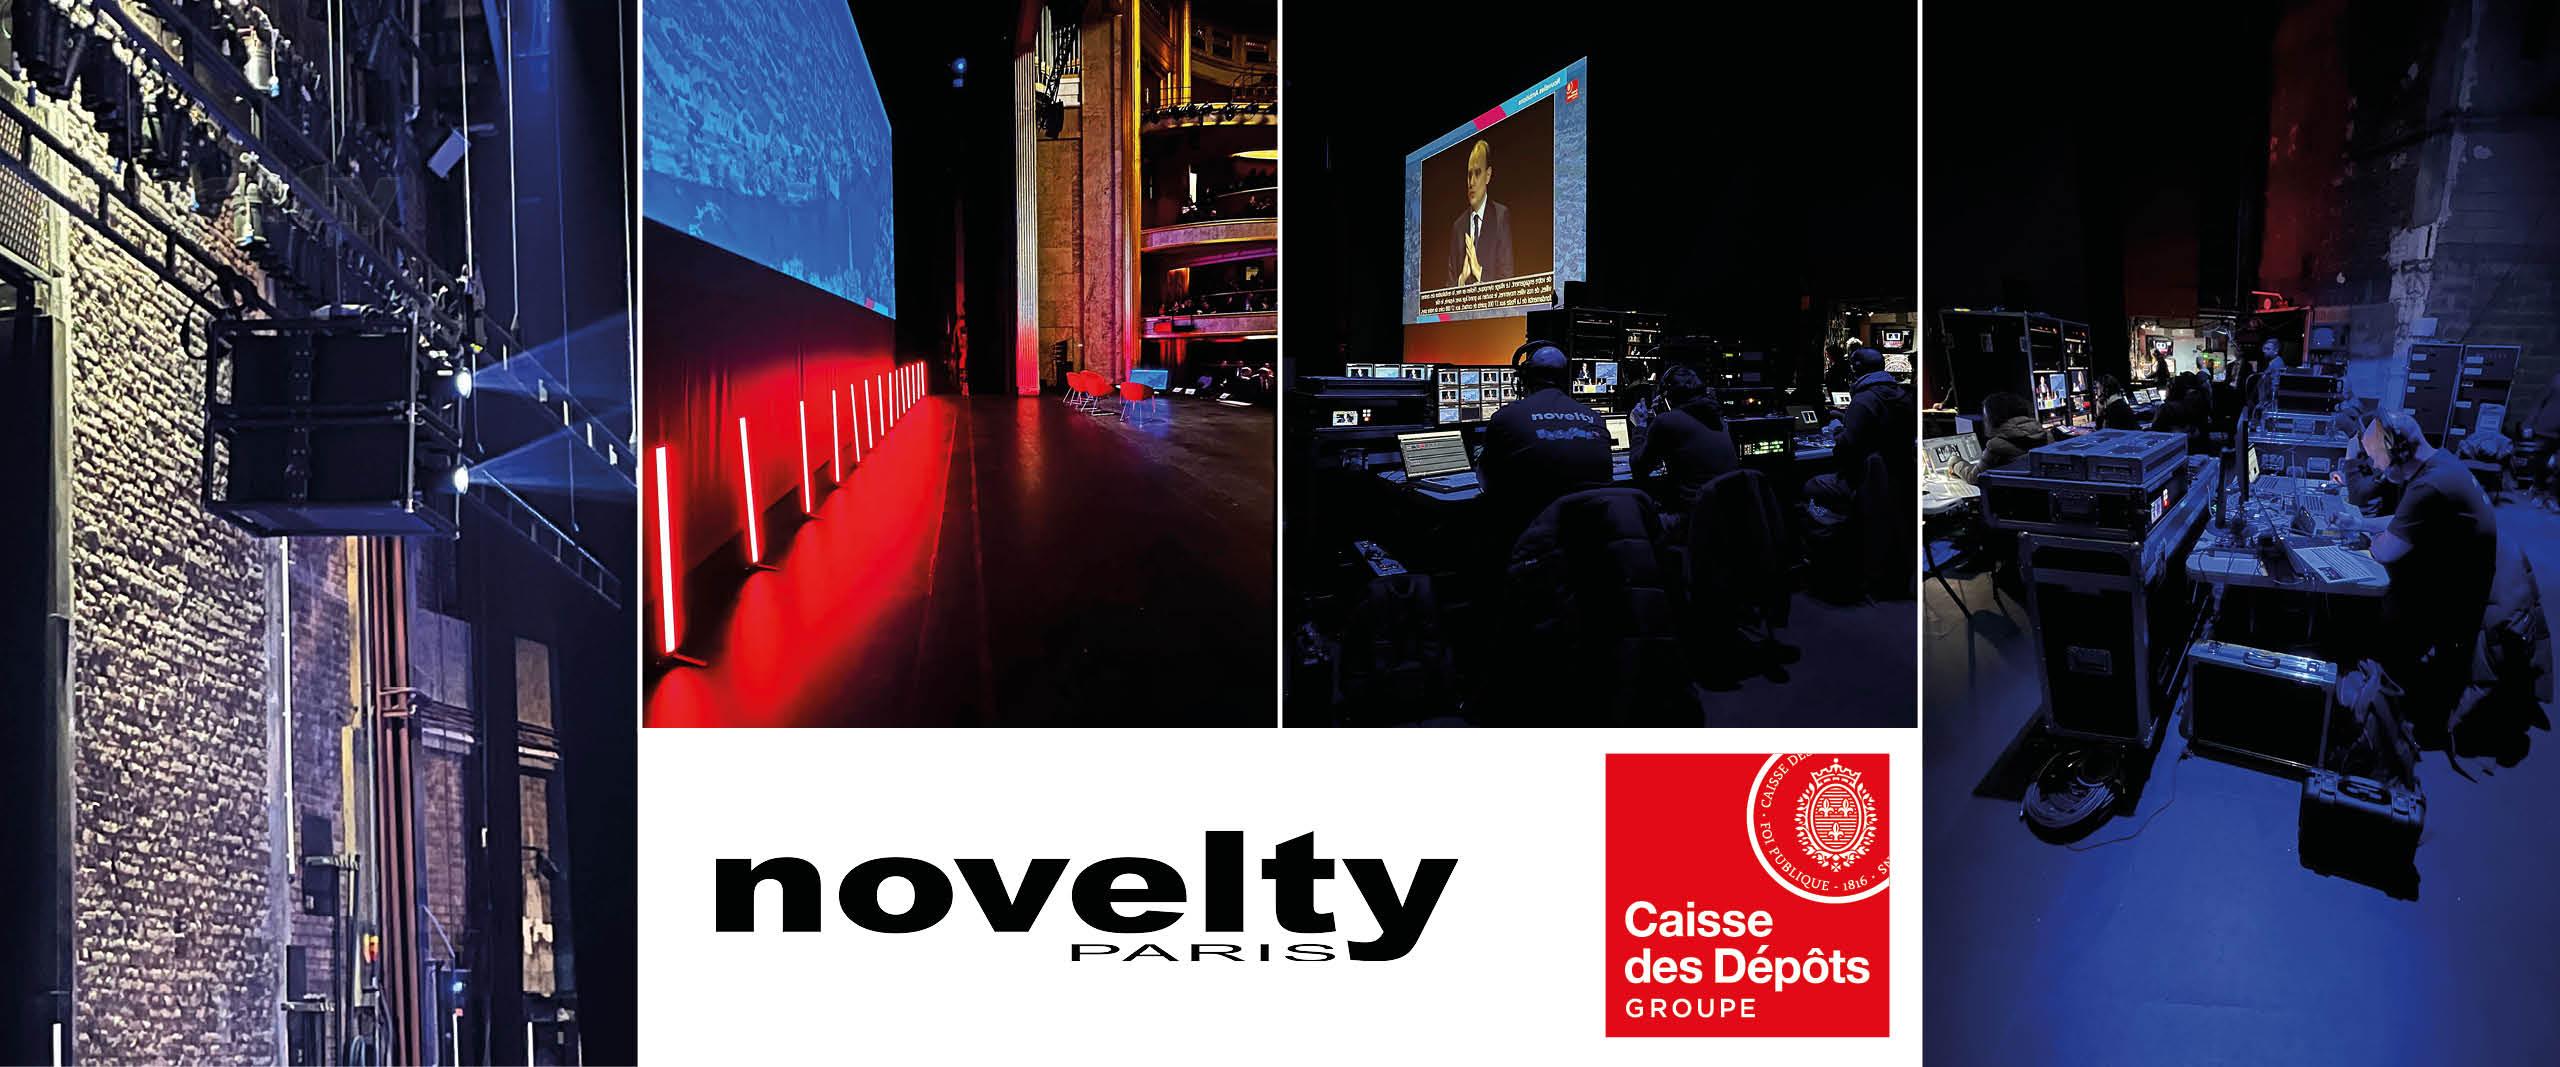 Visuel Novelty Paris au Théâtre des Champs-Élysées pour la Caisse des Dépôts